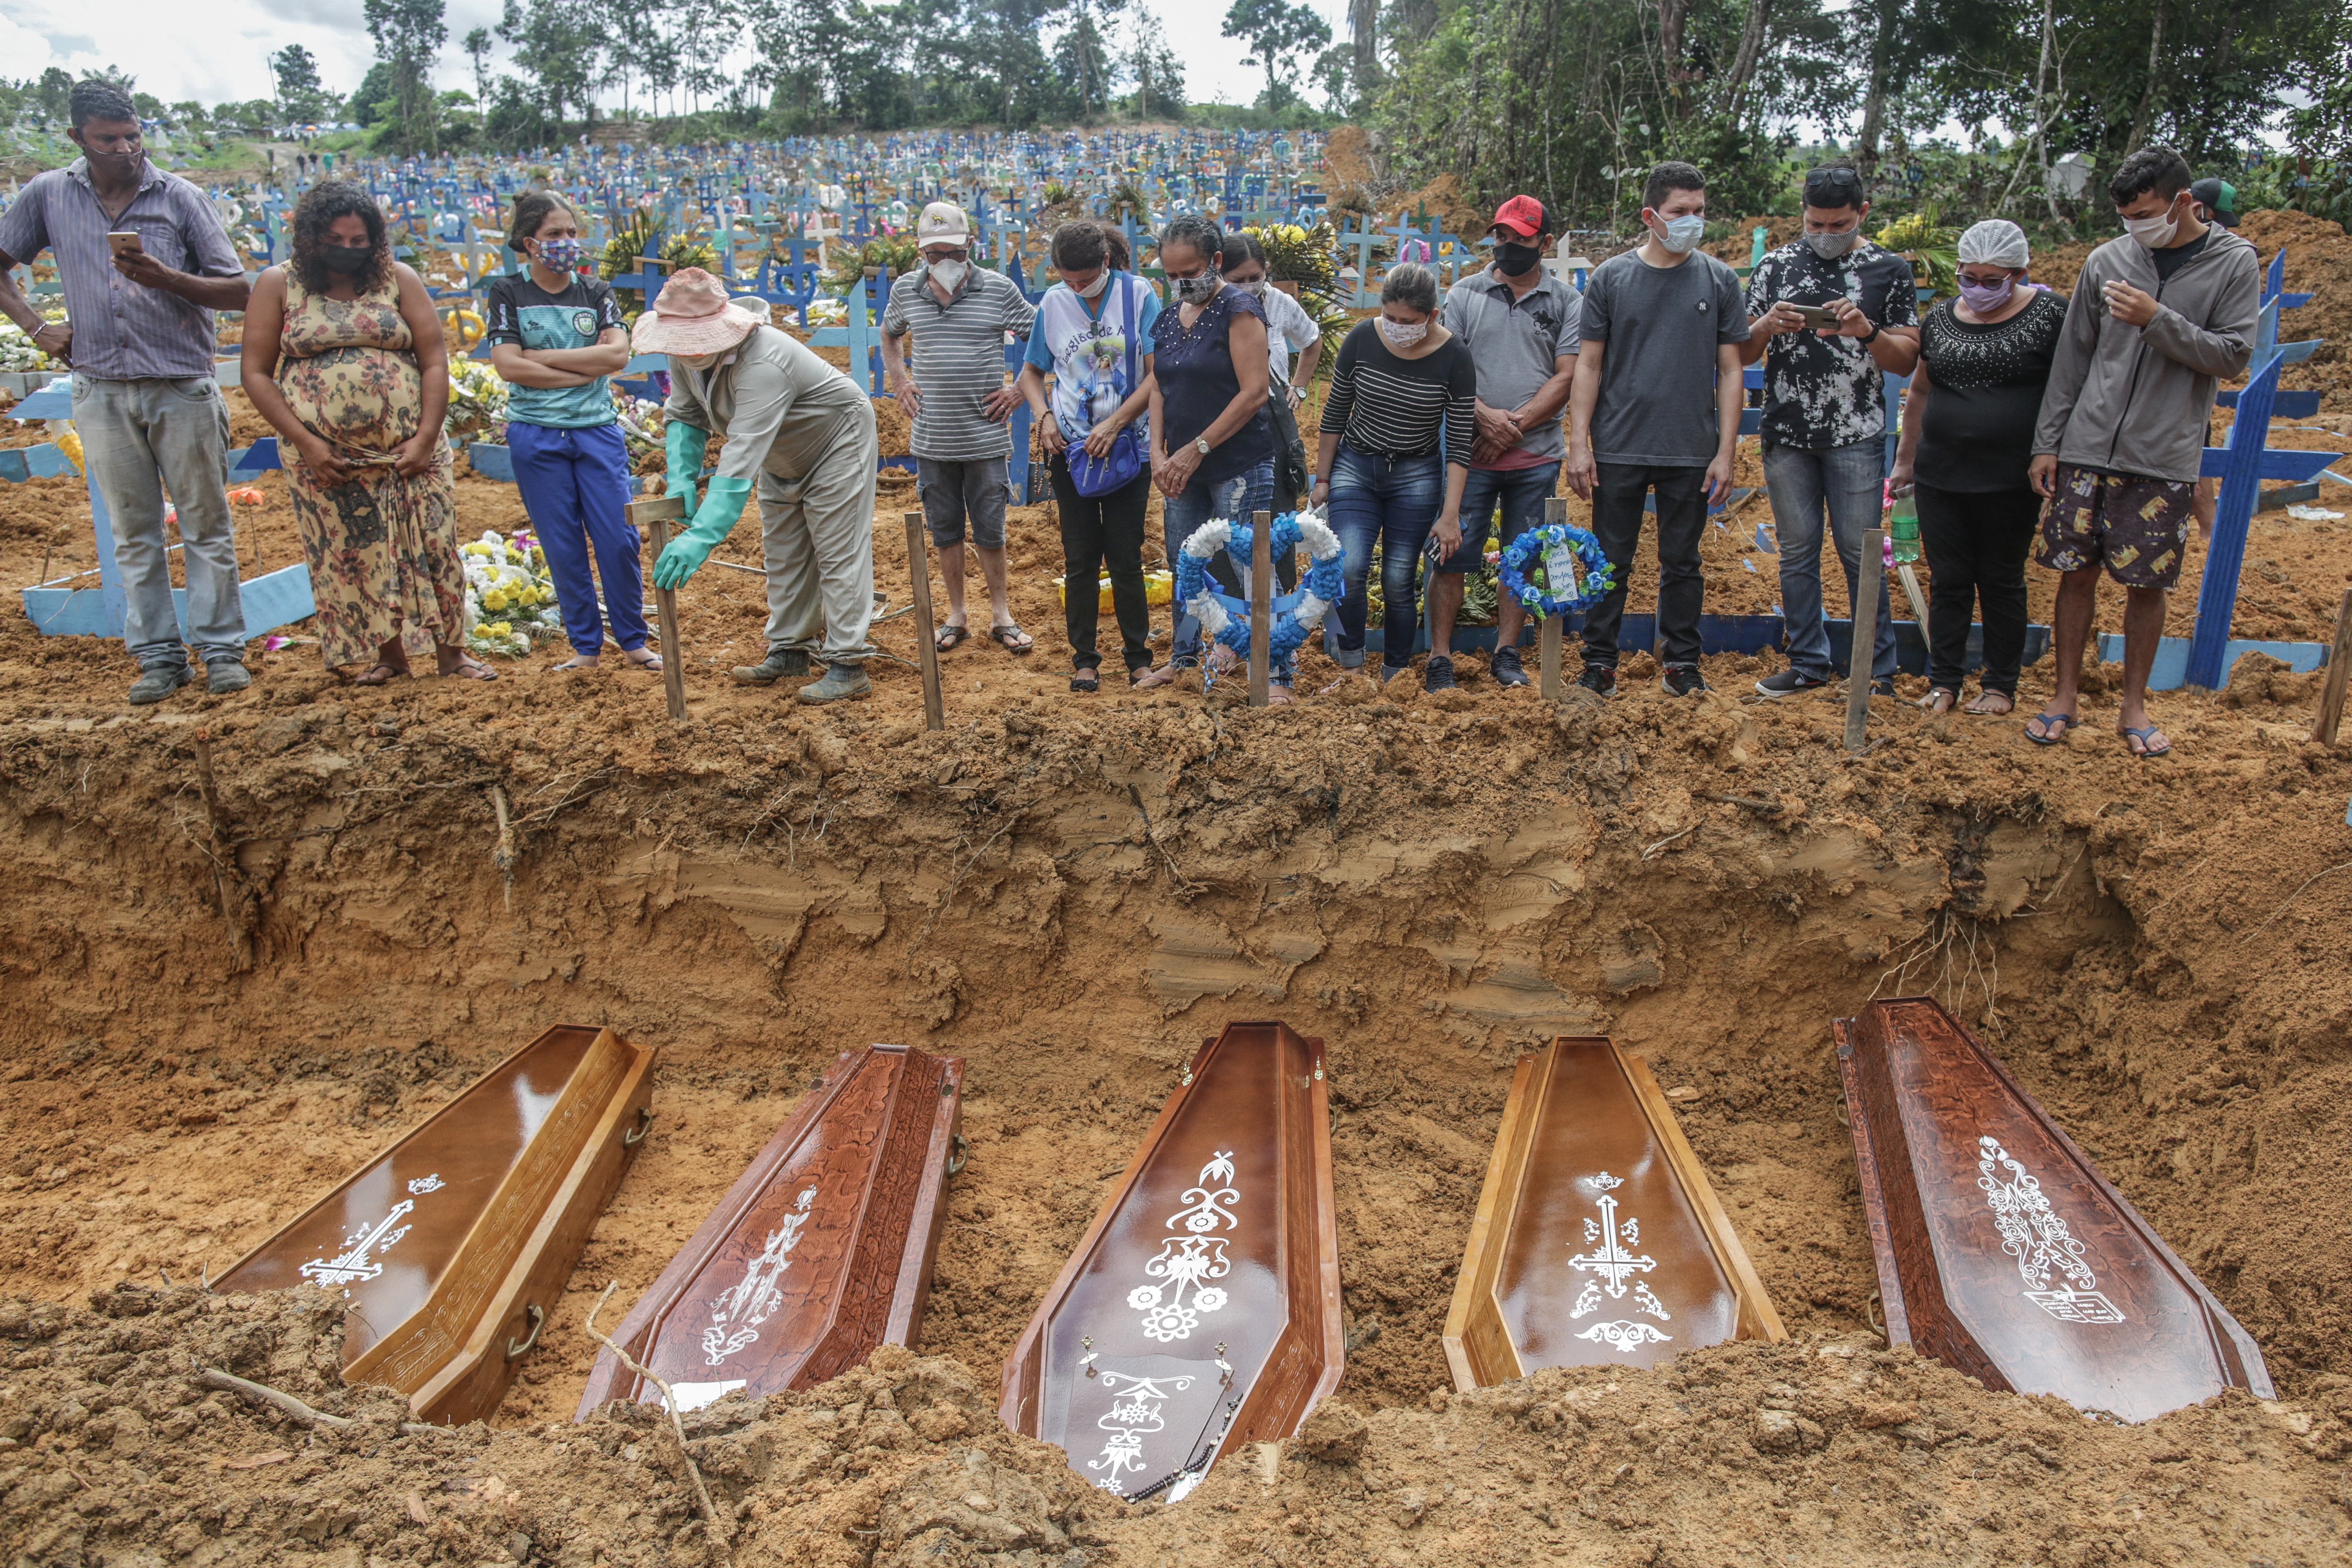 Personas con máscaras protectoras observan las tumbas con los restos de sus familiares durante un entierro masivo de las víctimas de la pandemia del coronavirus (COVID-19) en el cementerio Parque Taruma el 19 de mayo de 2020 en Manaus, Brasil.